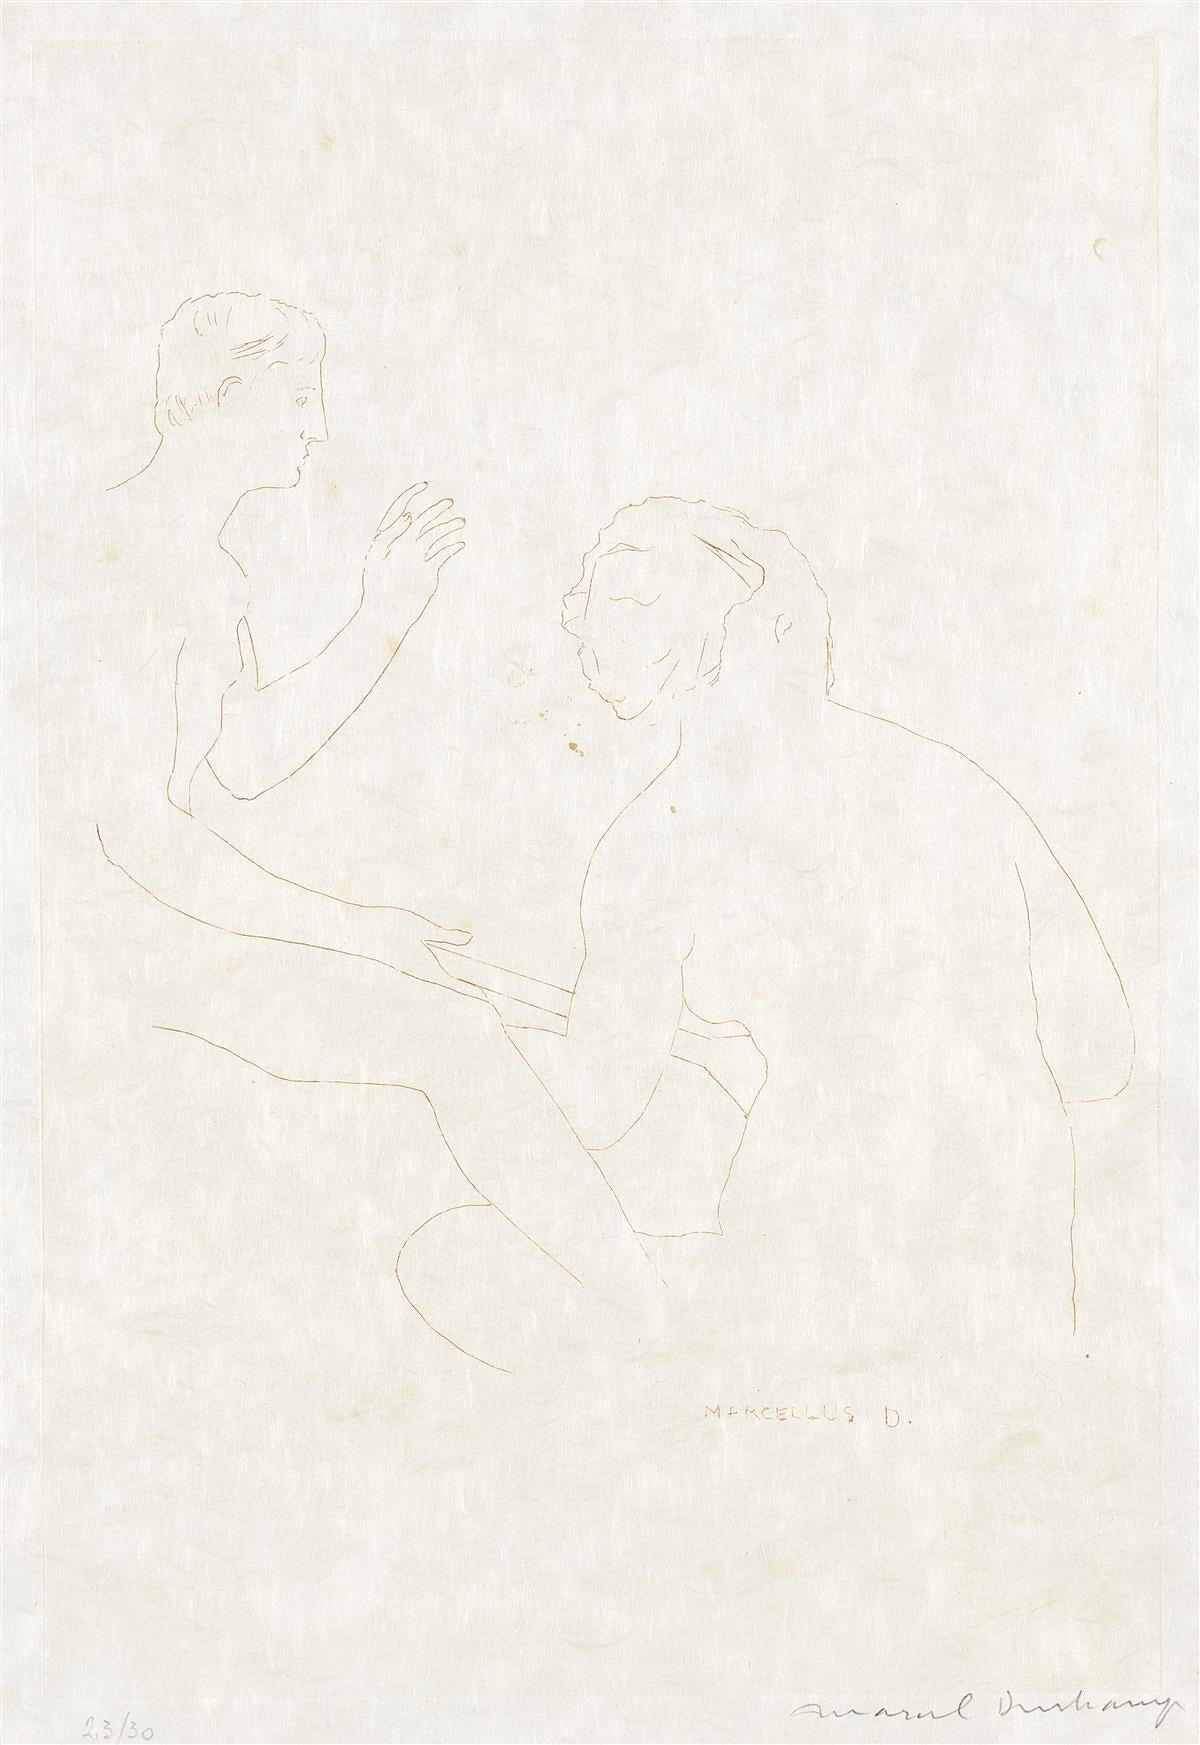 Abstract Print Marcel Duchamp - Morceaux choisis d'après Ingres, I